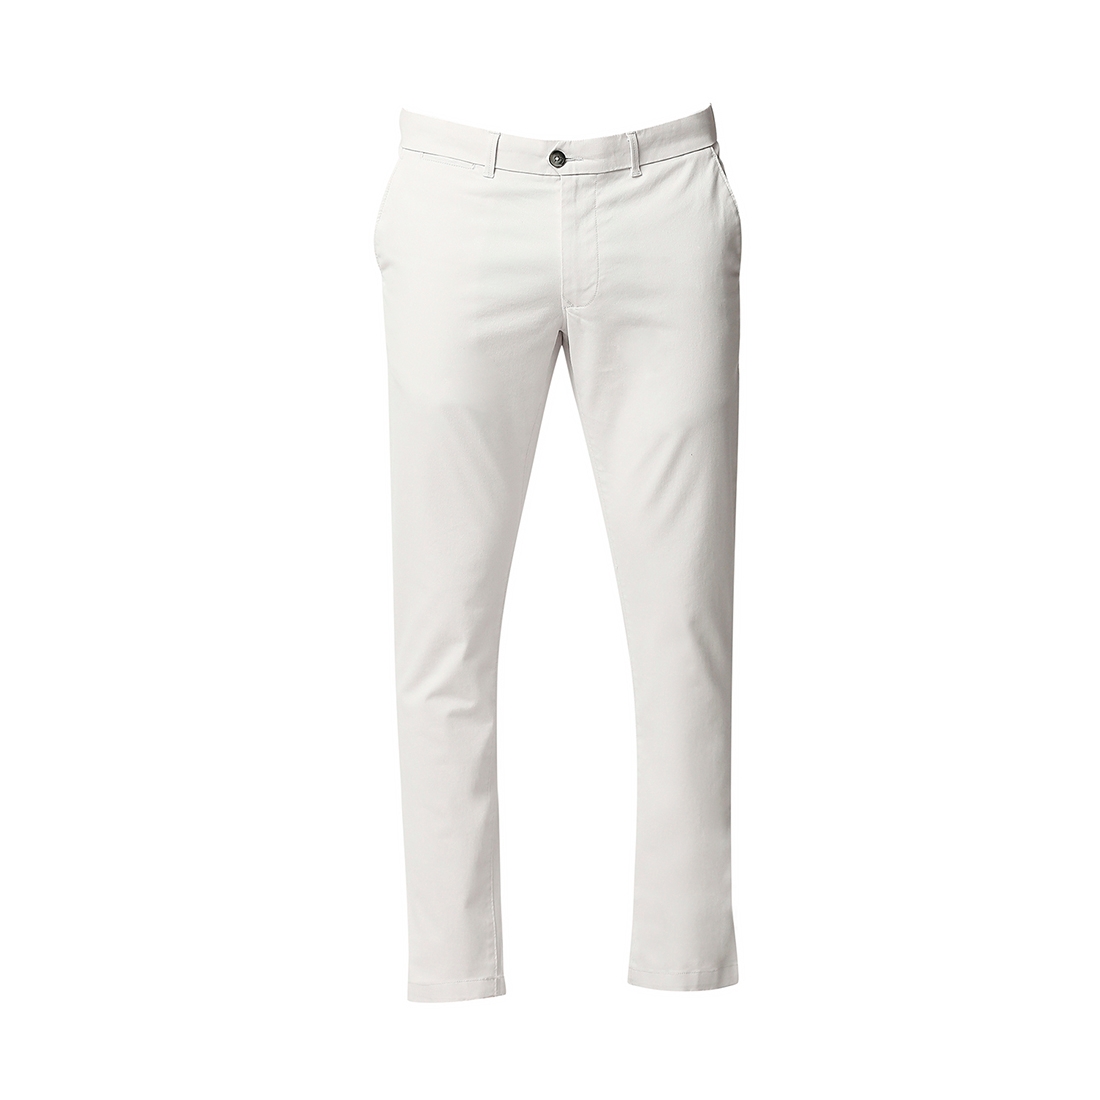 Basics | Men's White Cotton Blend Solid Trouser 5